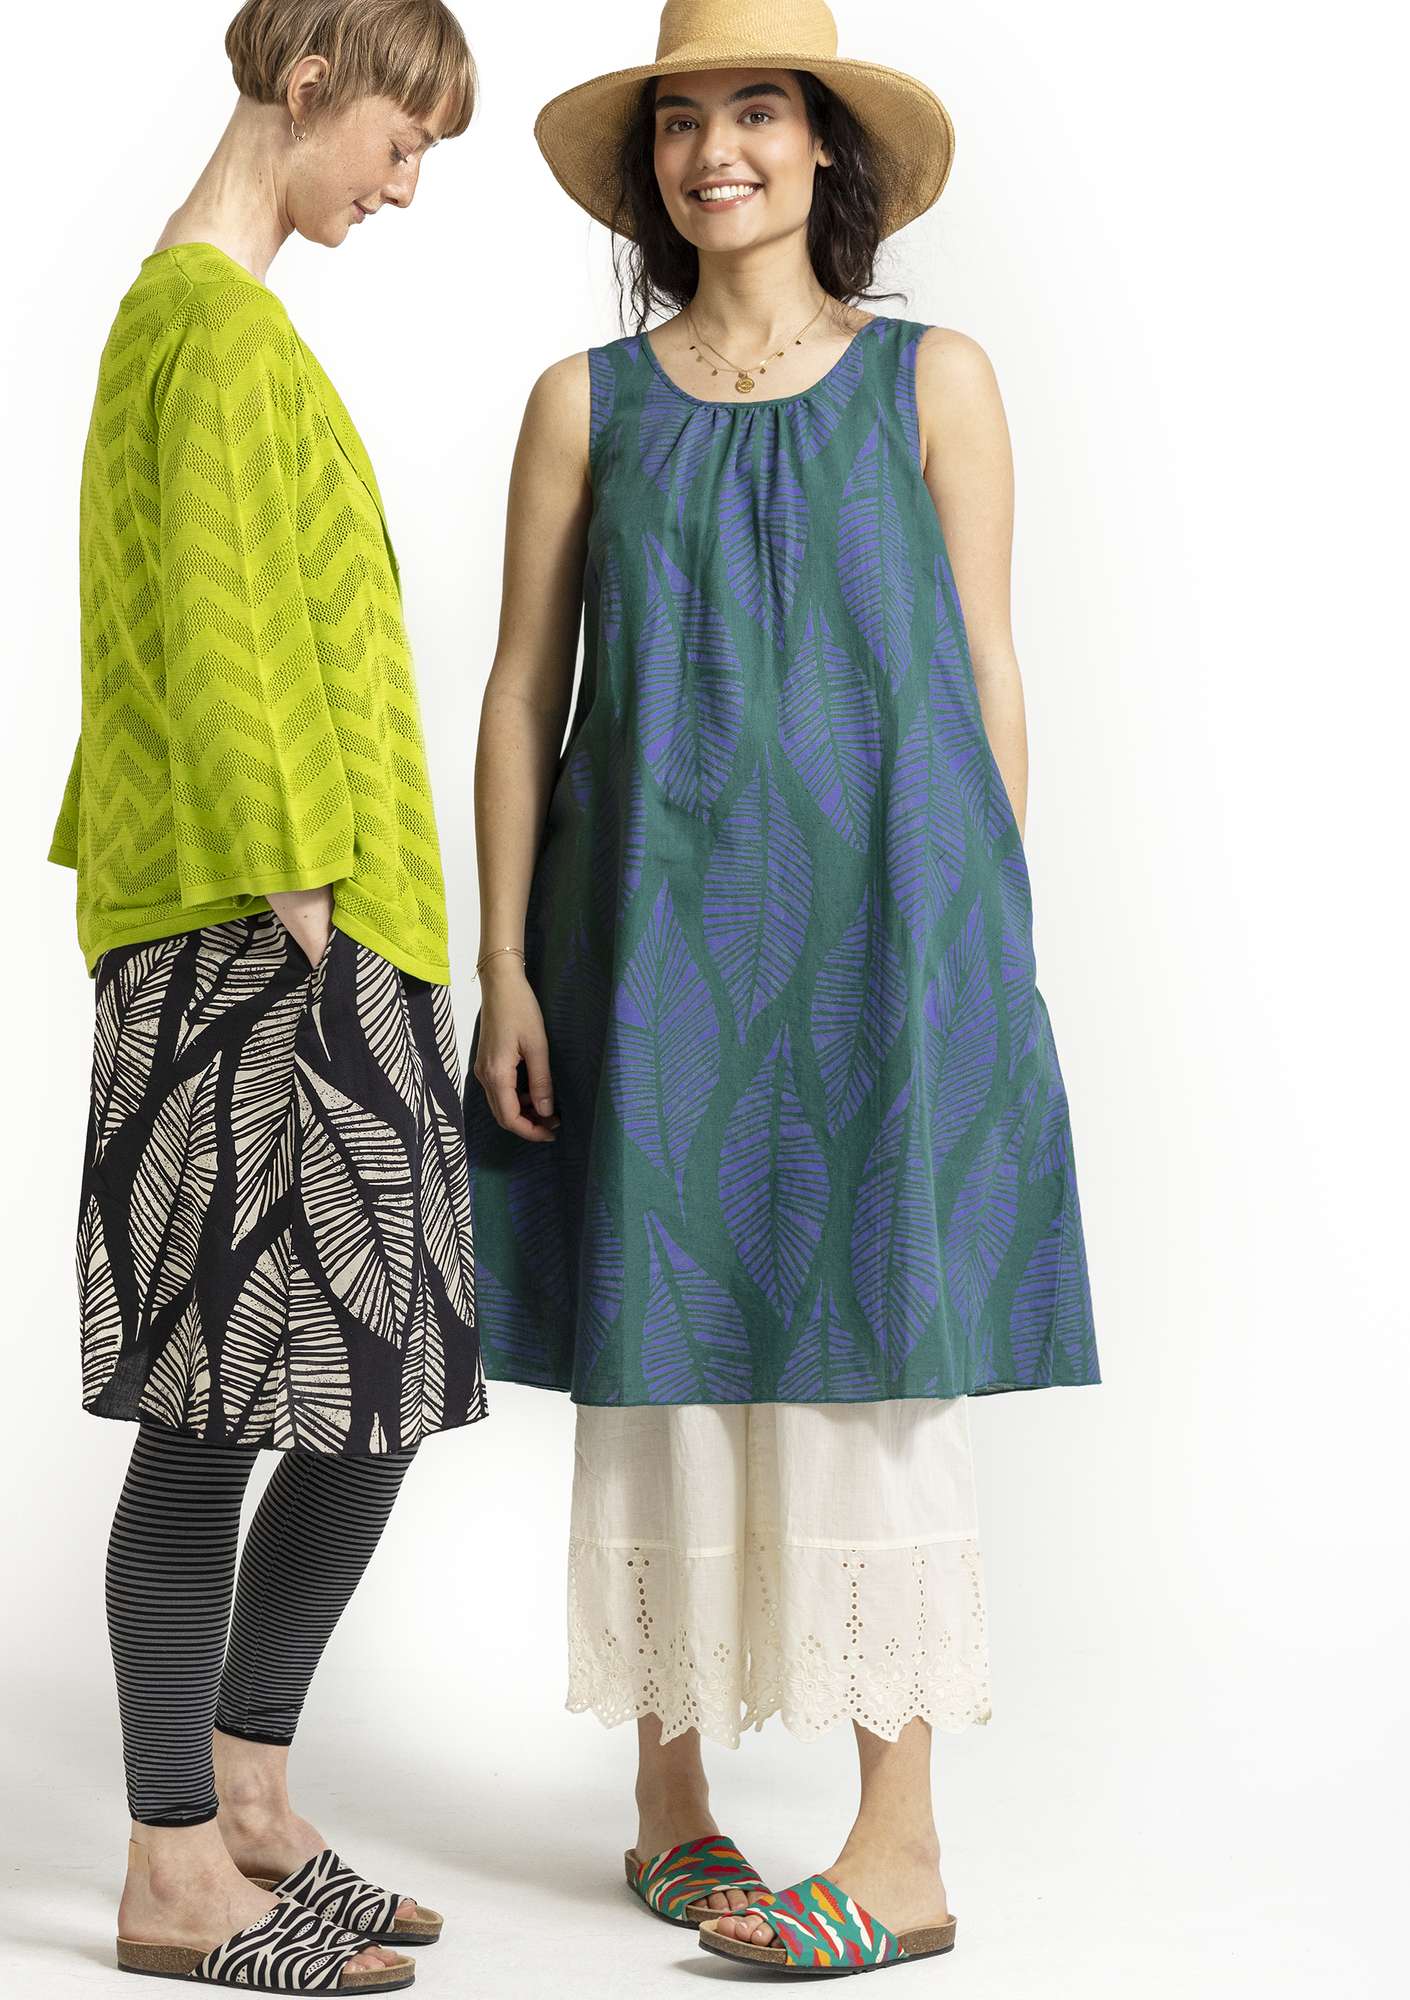 Vevd kjole «Decor» i økologisk bomull/lin påfuglgrønn thumbnail